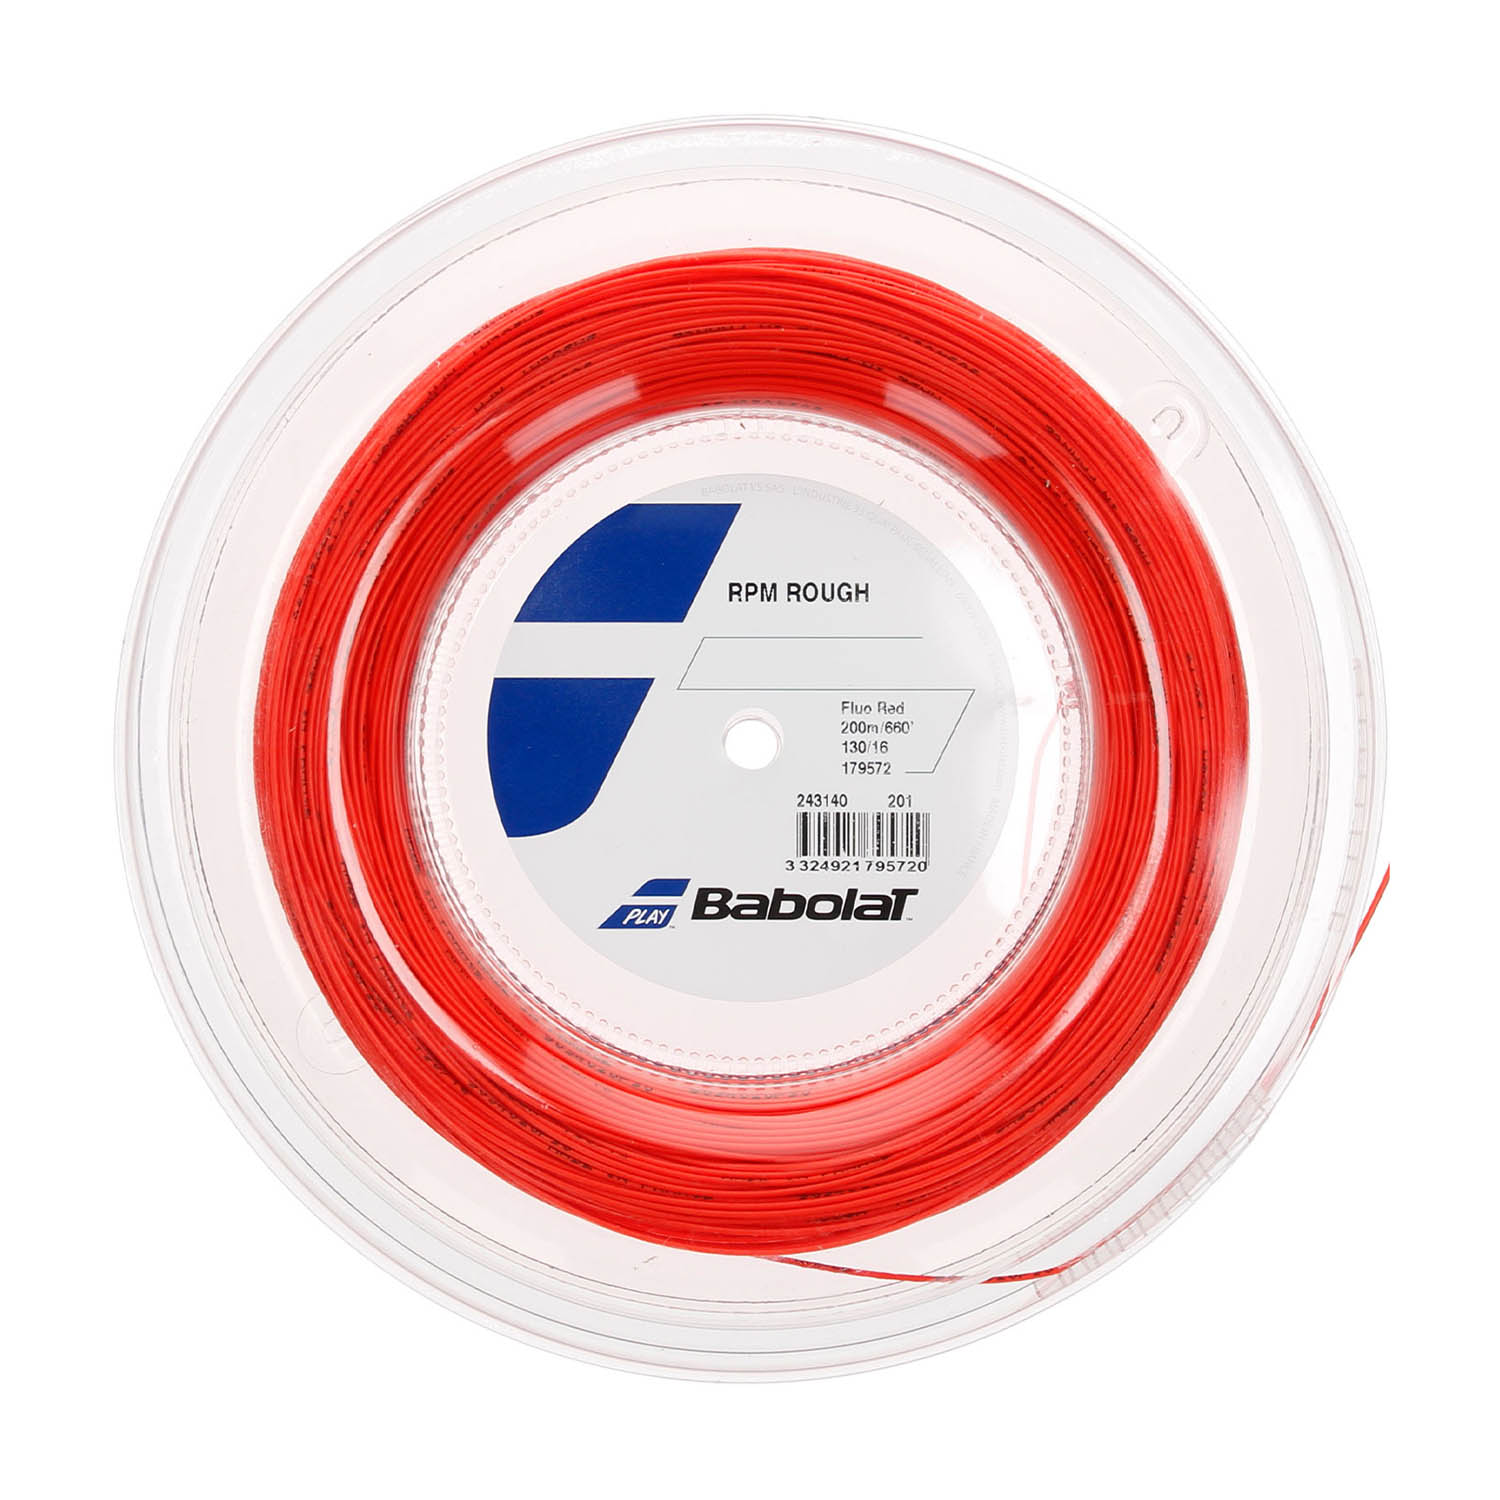 Babolat RPM Rough 1.30 Matassa 200 m - Red Fluo